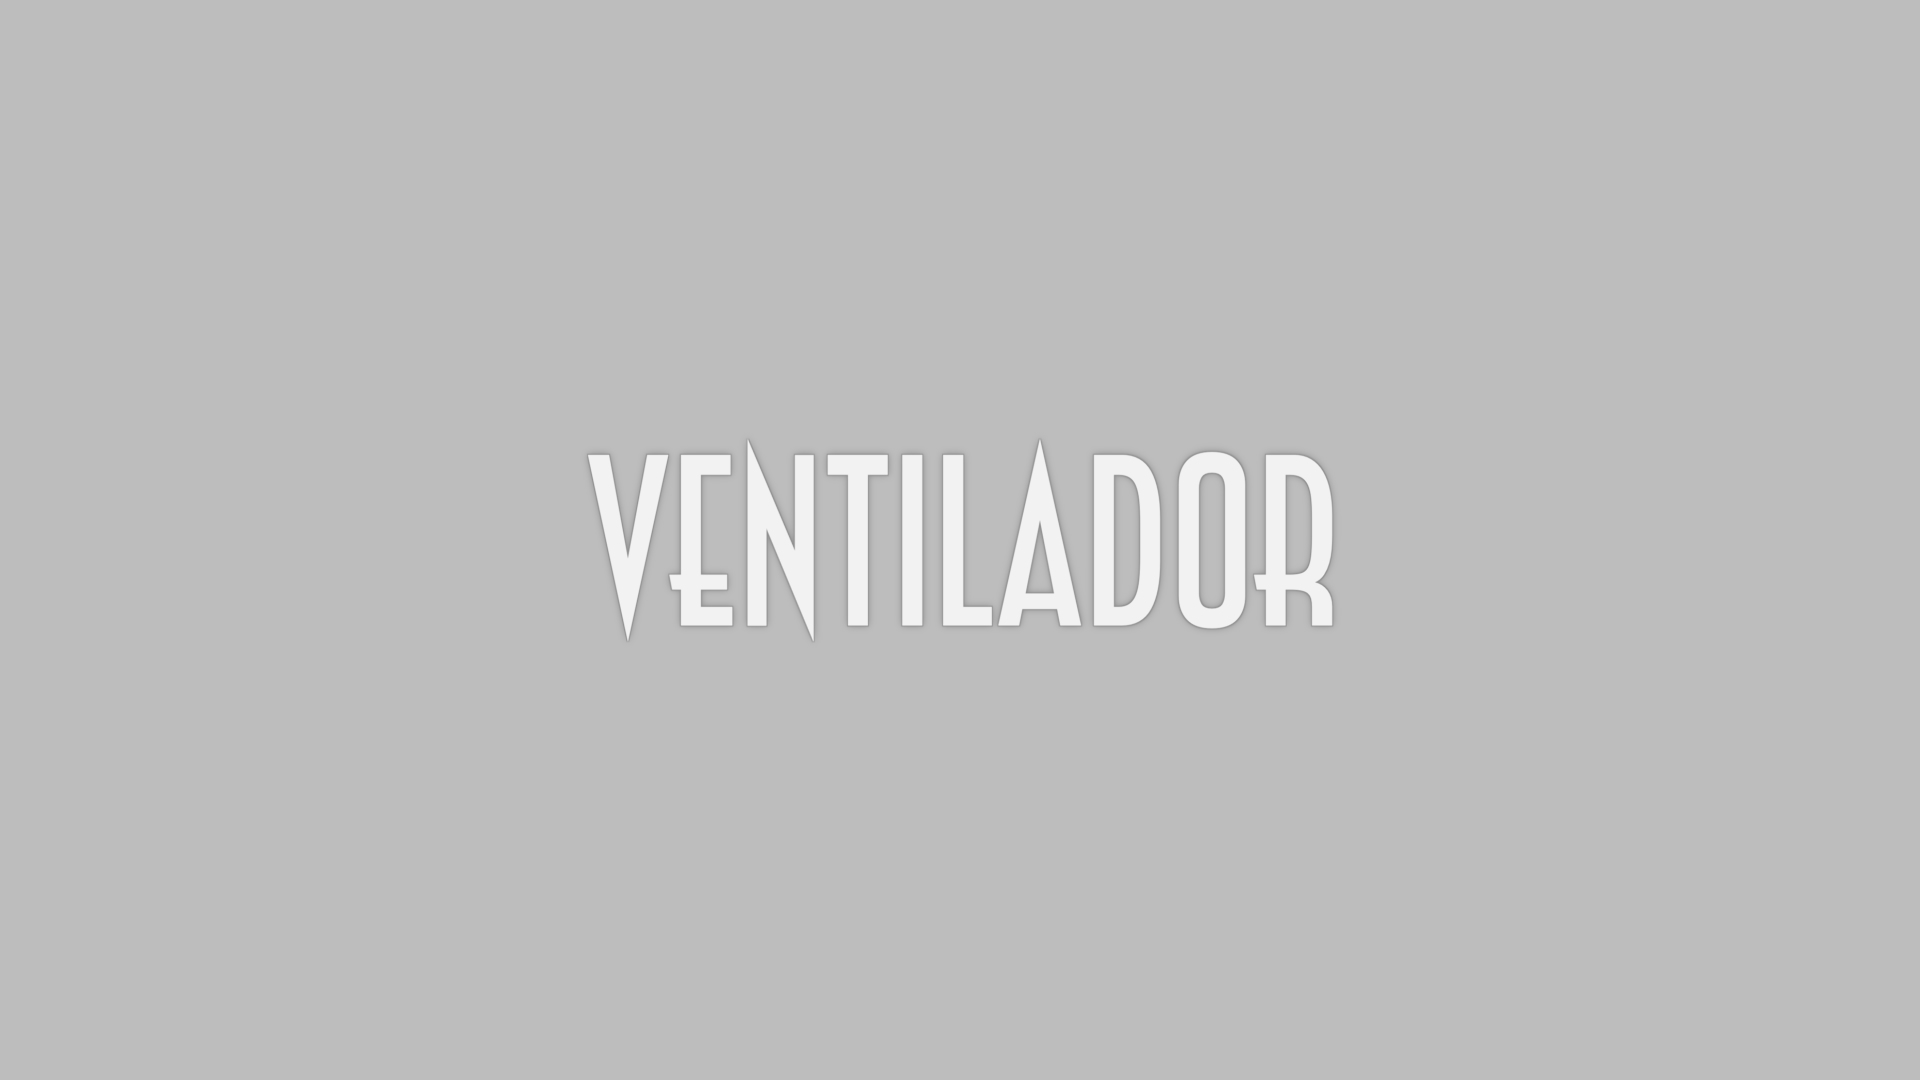 Ventilador -LROD 2.png